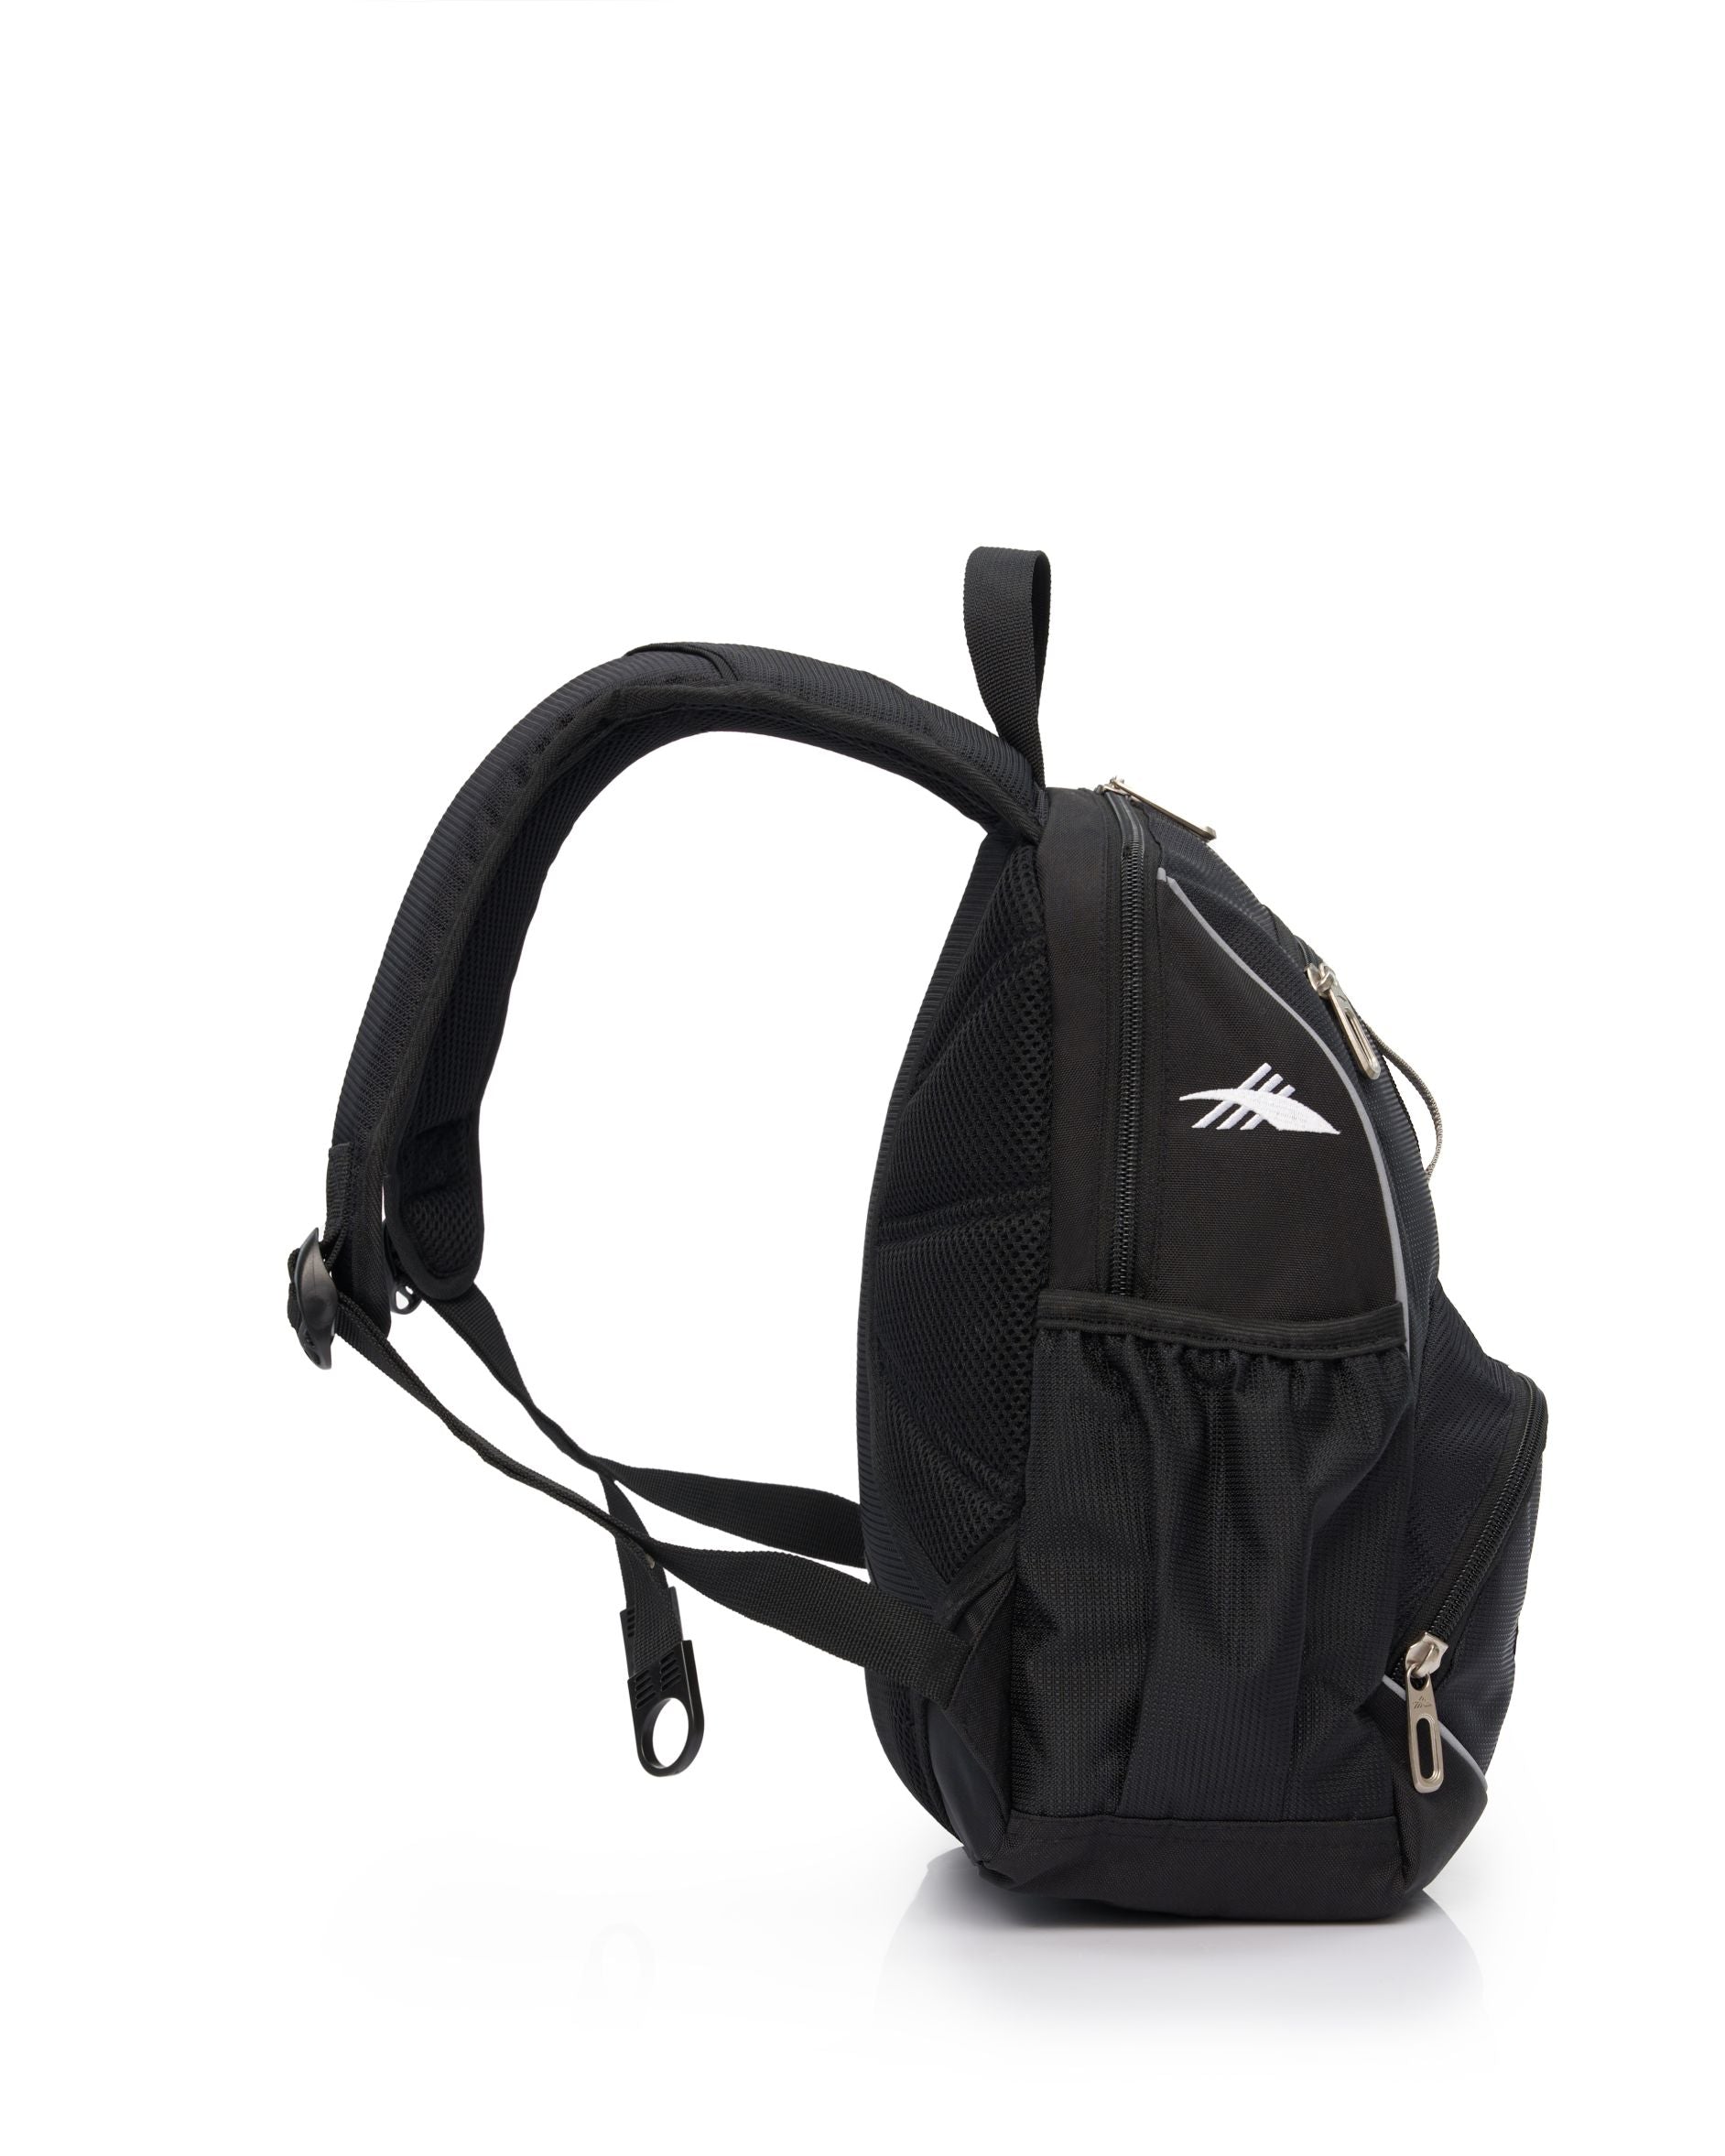 High Sierra - Mini Backpack 2.0 - Black/Silver-3